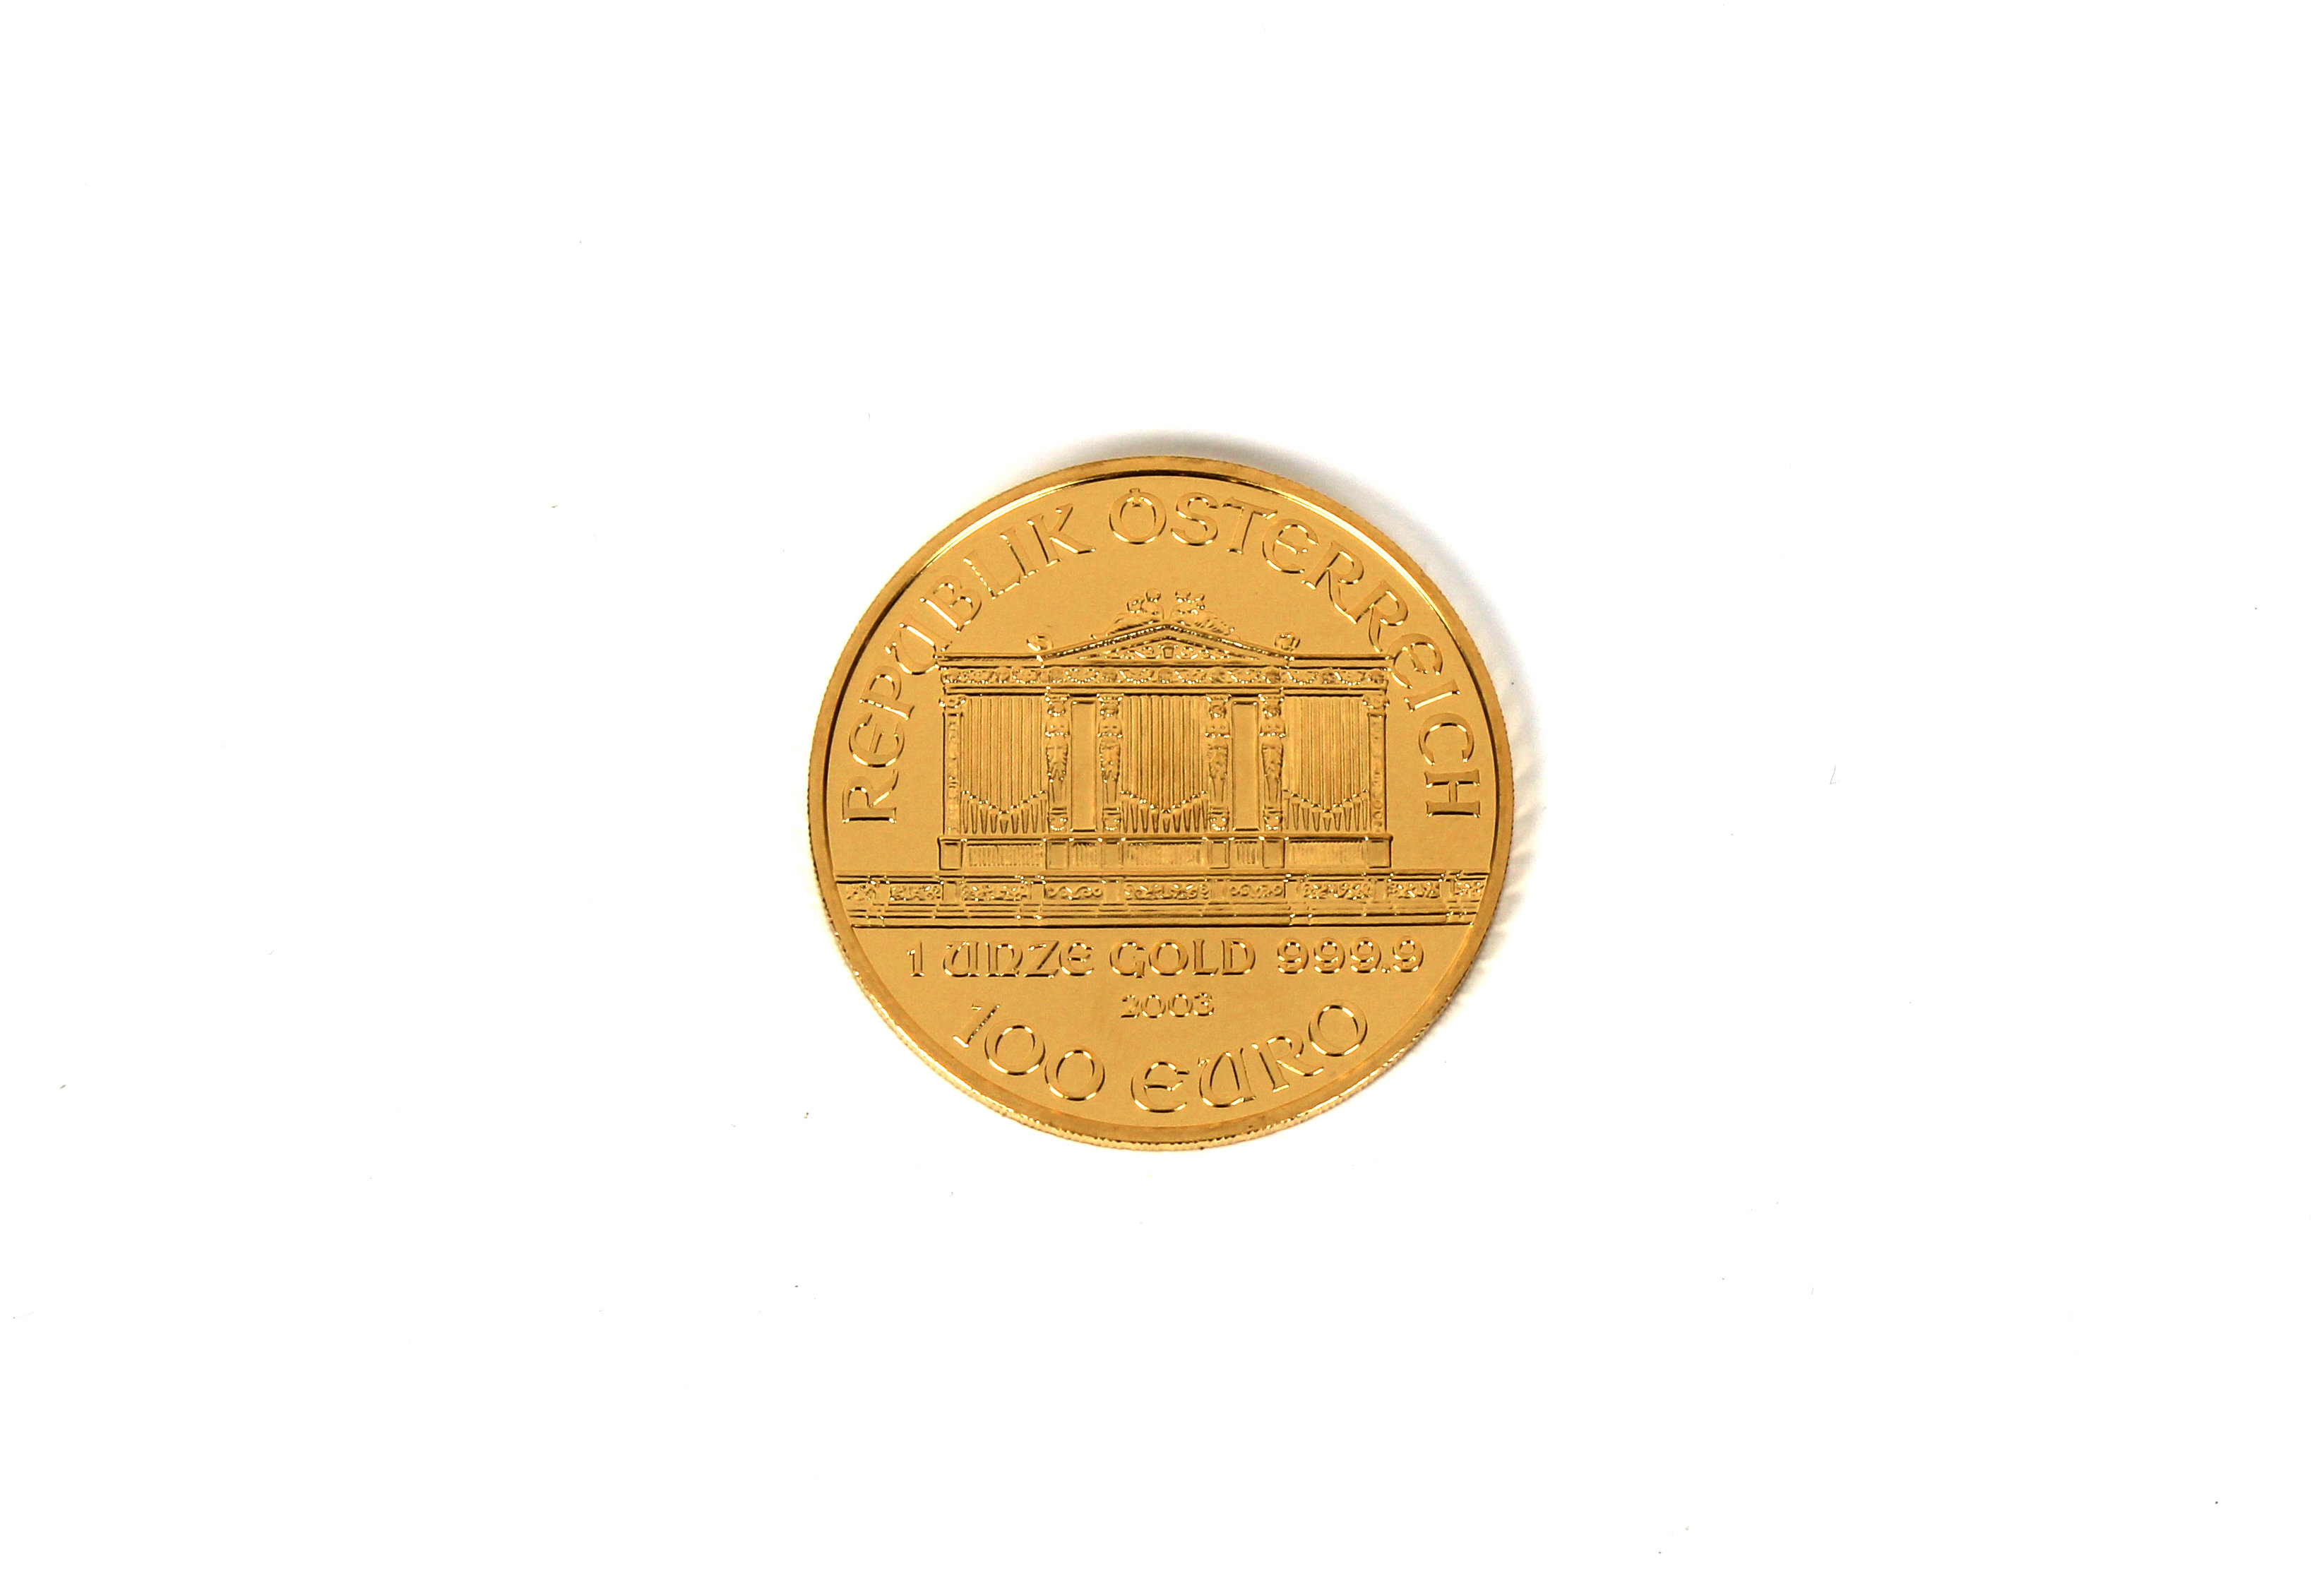 A Münze Österreich Vienna Austria 2003 1oz Gold (.999) 100 Euro coin.